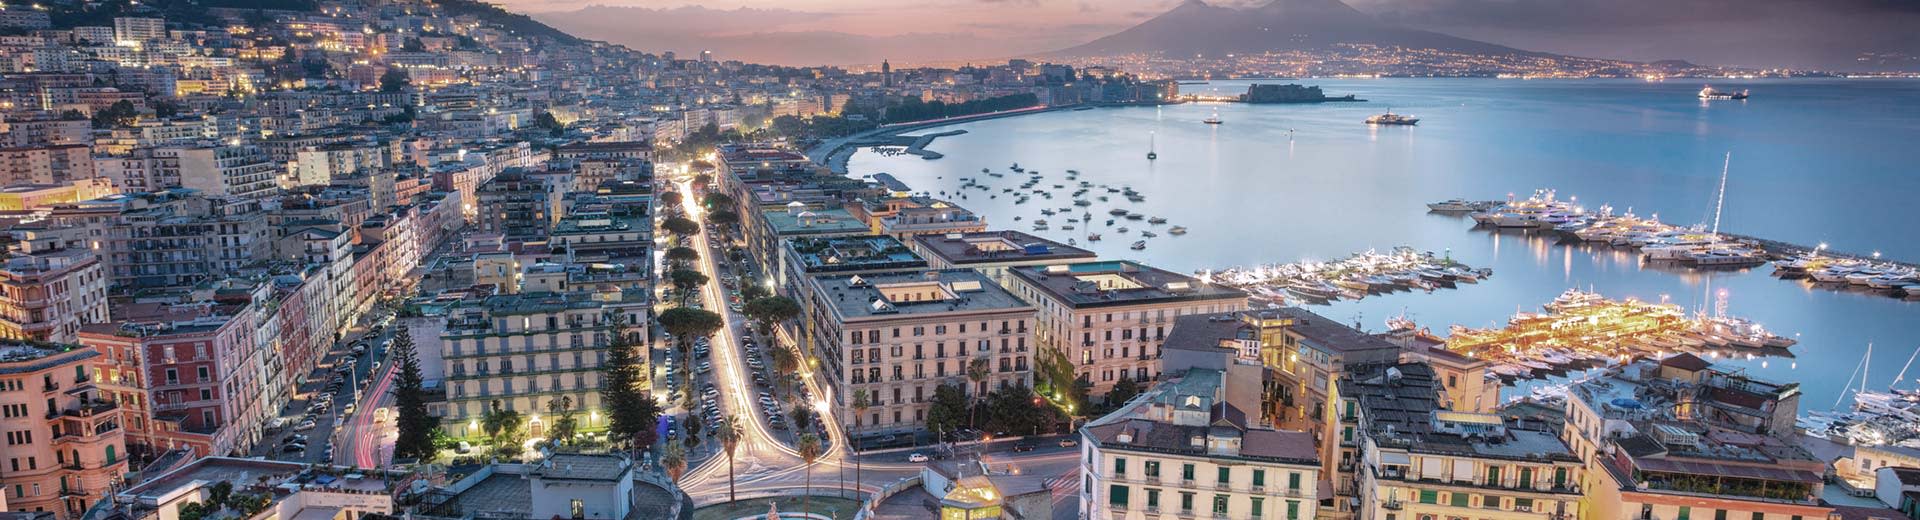 La hermosa ciudad de Nápoles se extiende por la costa al anochecer, con el océano acostado en el fondo.